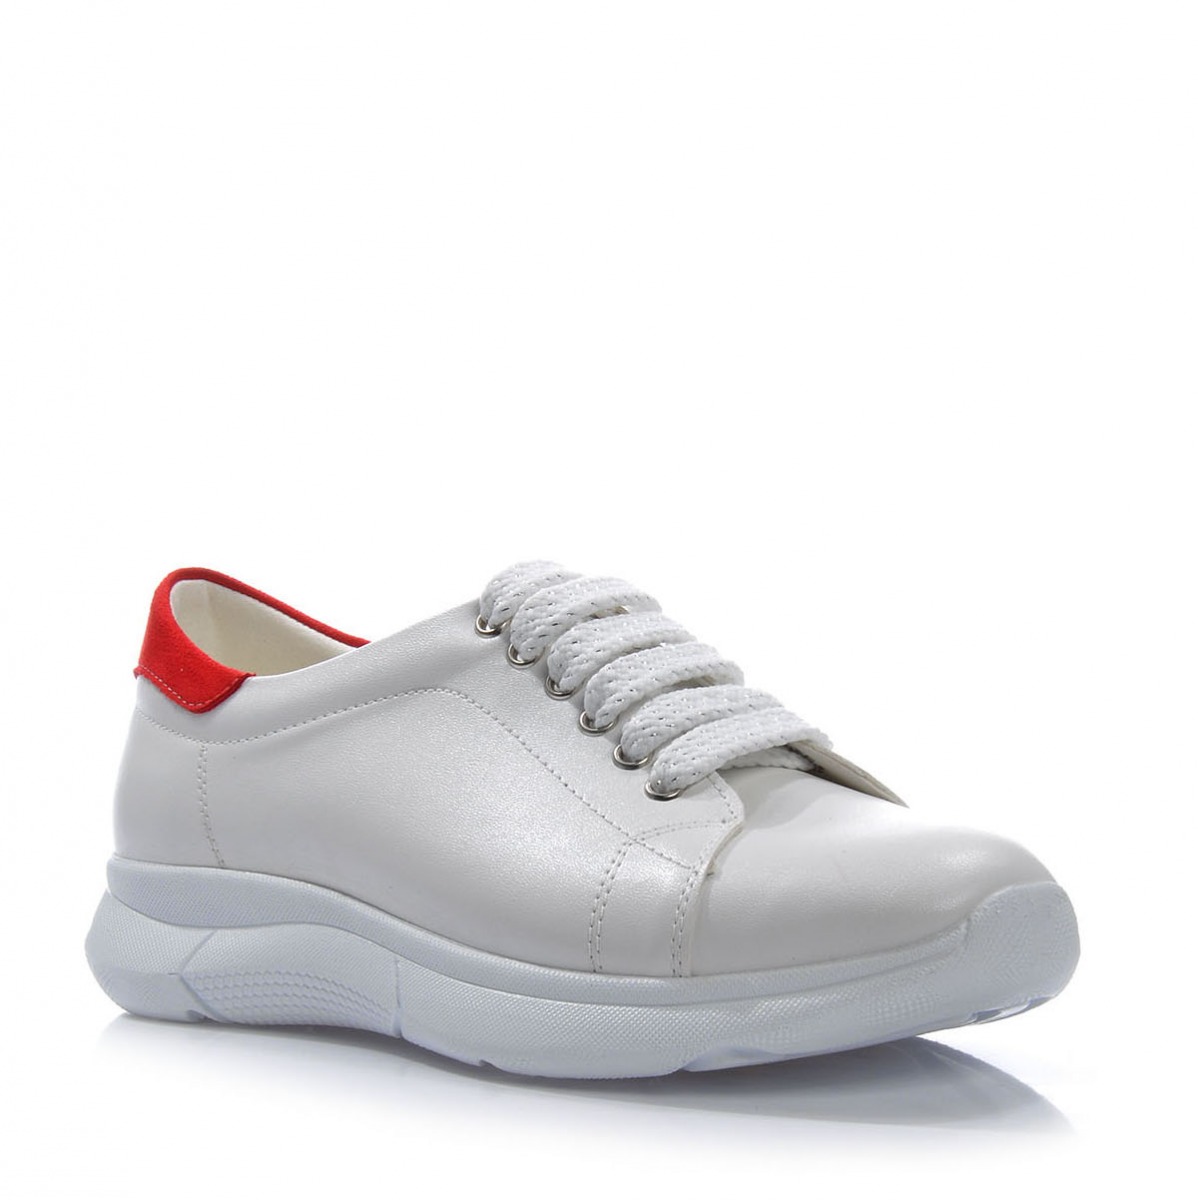 Flo Kadın  Beyaz- Kırmızı Spor Ayakkabı VZN-315Y. 2